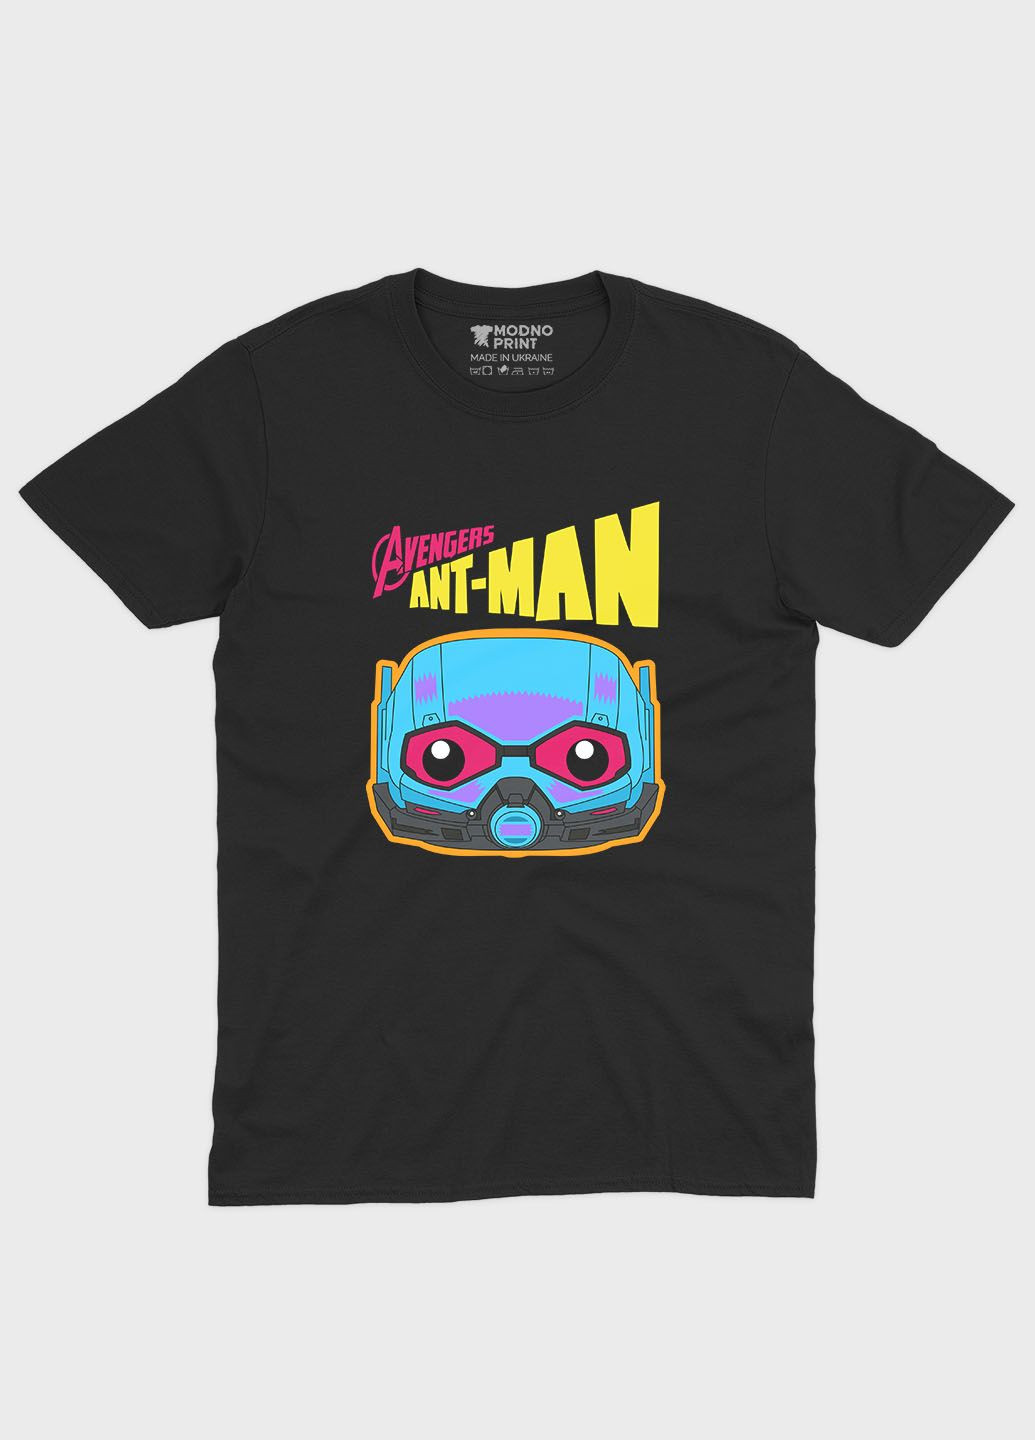 Черная мужская футболка с принтом супергероя человек муравья (ts001-1-bl-006-026-003) Modno